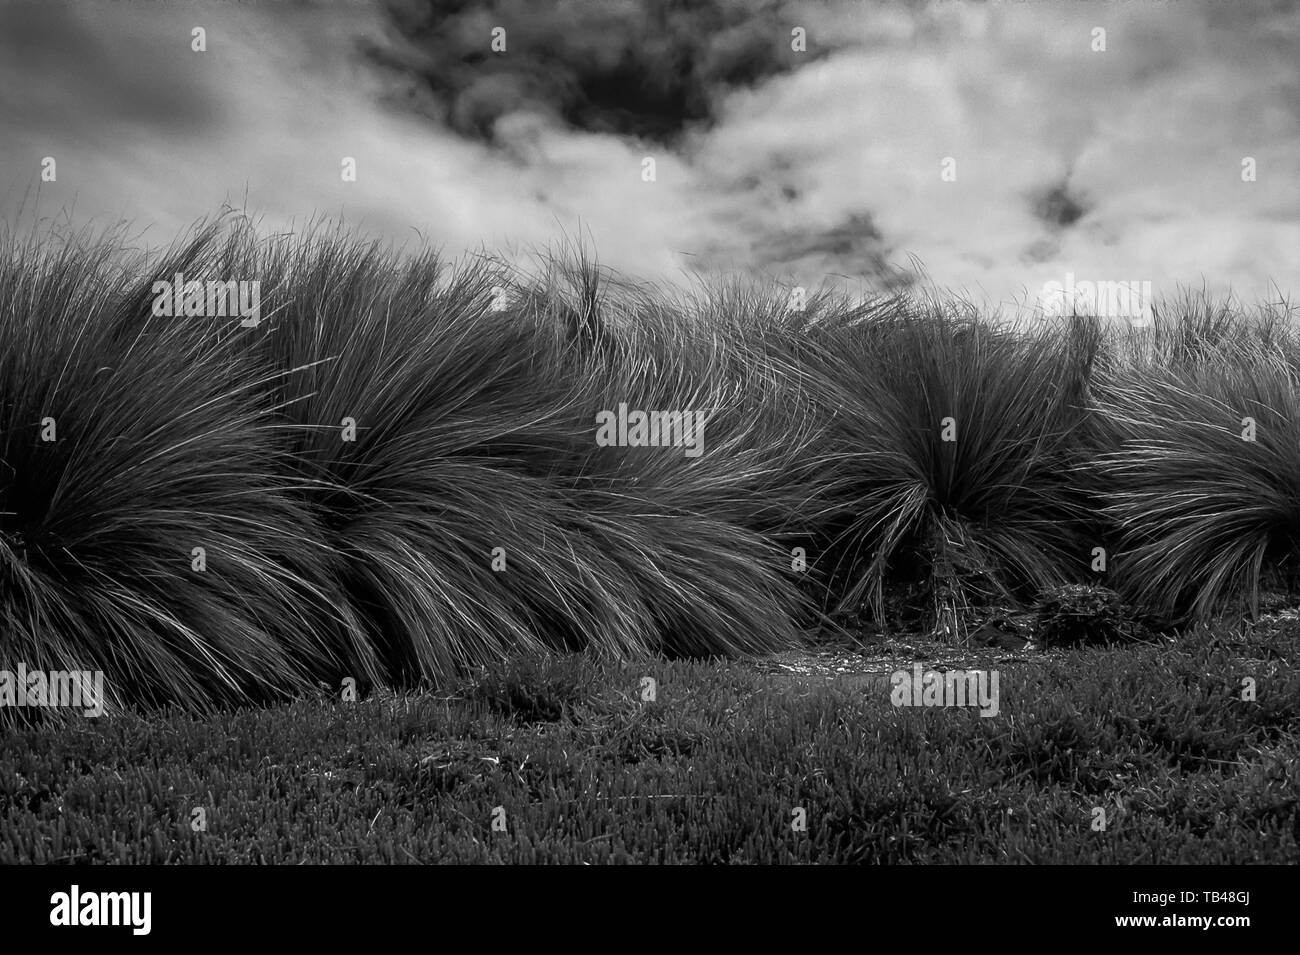 Starker Wind in tussock Gras mit bedrohlichen Wolken im Hintergrund, dass ein Gewitter, Victoria, Australien erwarten. Schwarz und Weiß. Stockfoto